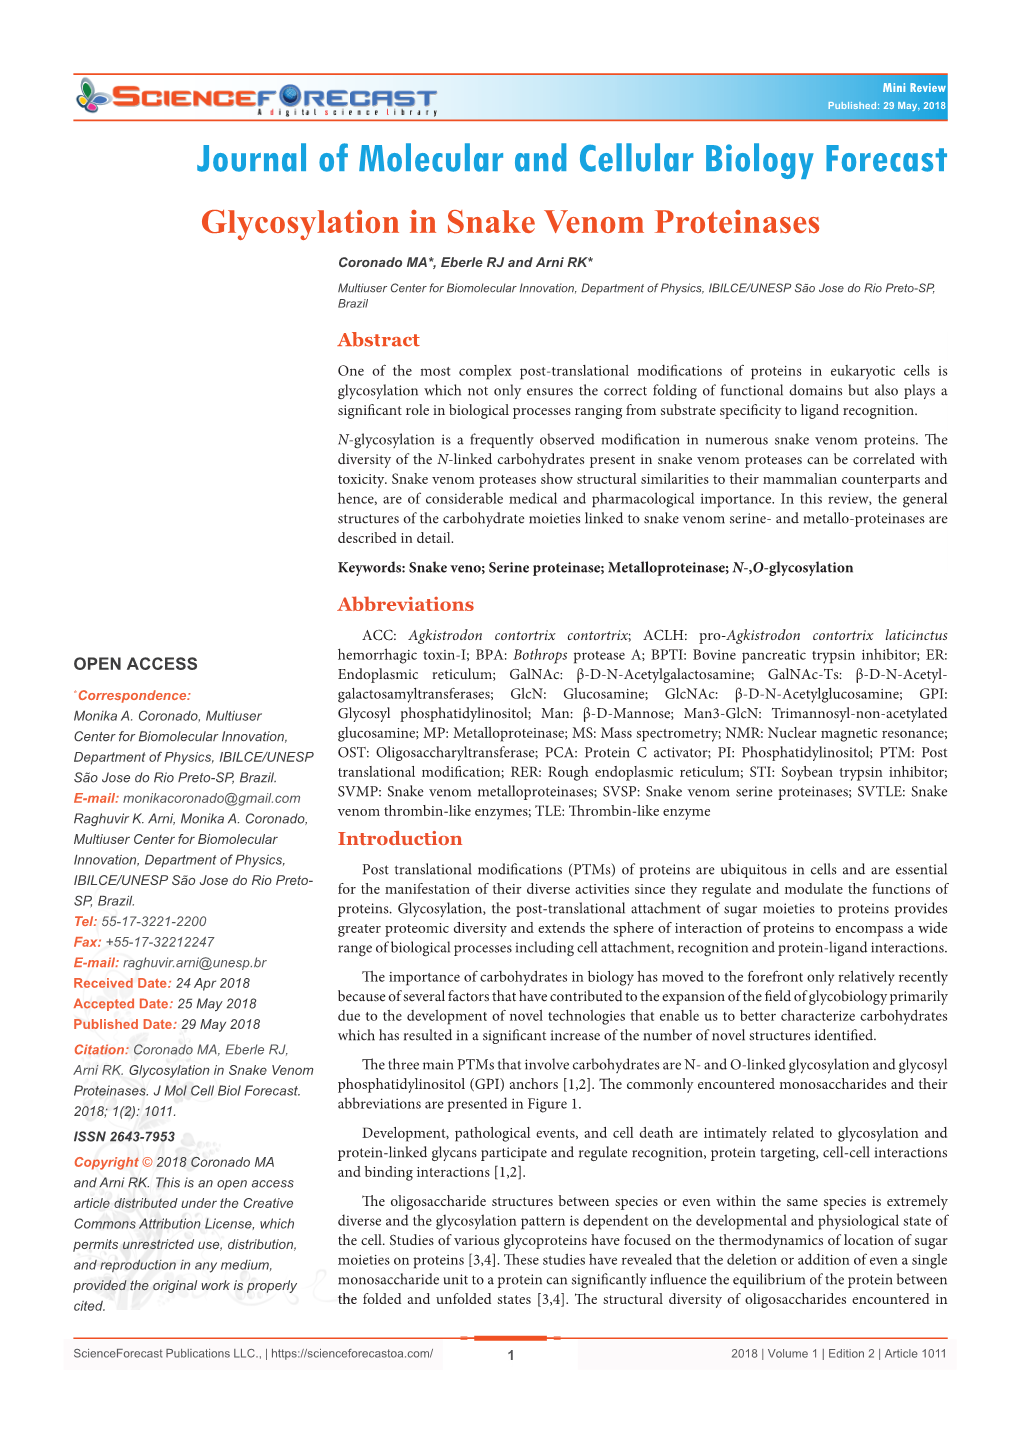 Glycosylation in Snake Venom Proteinases